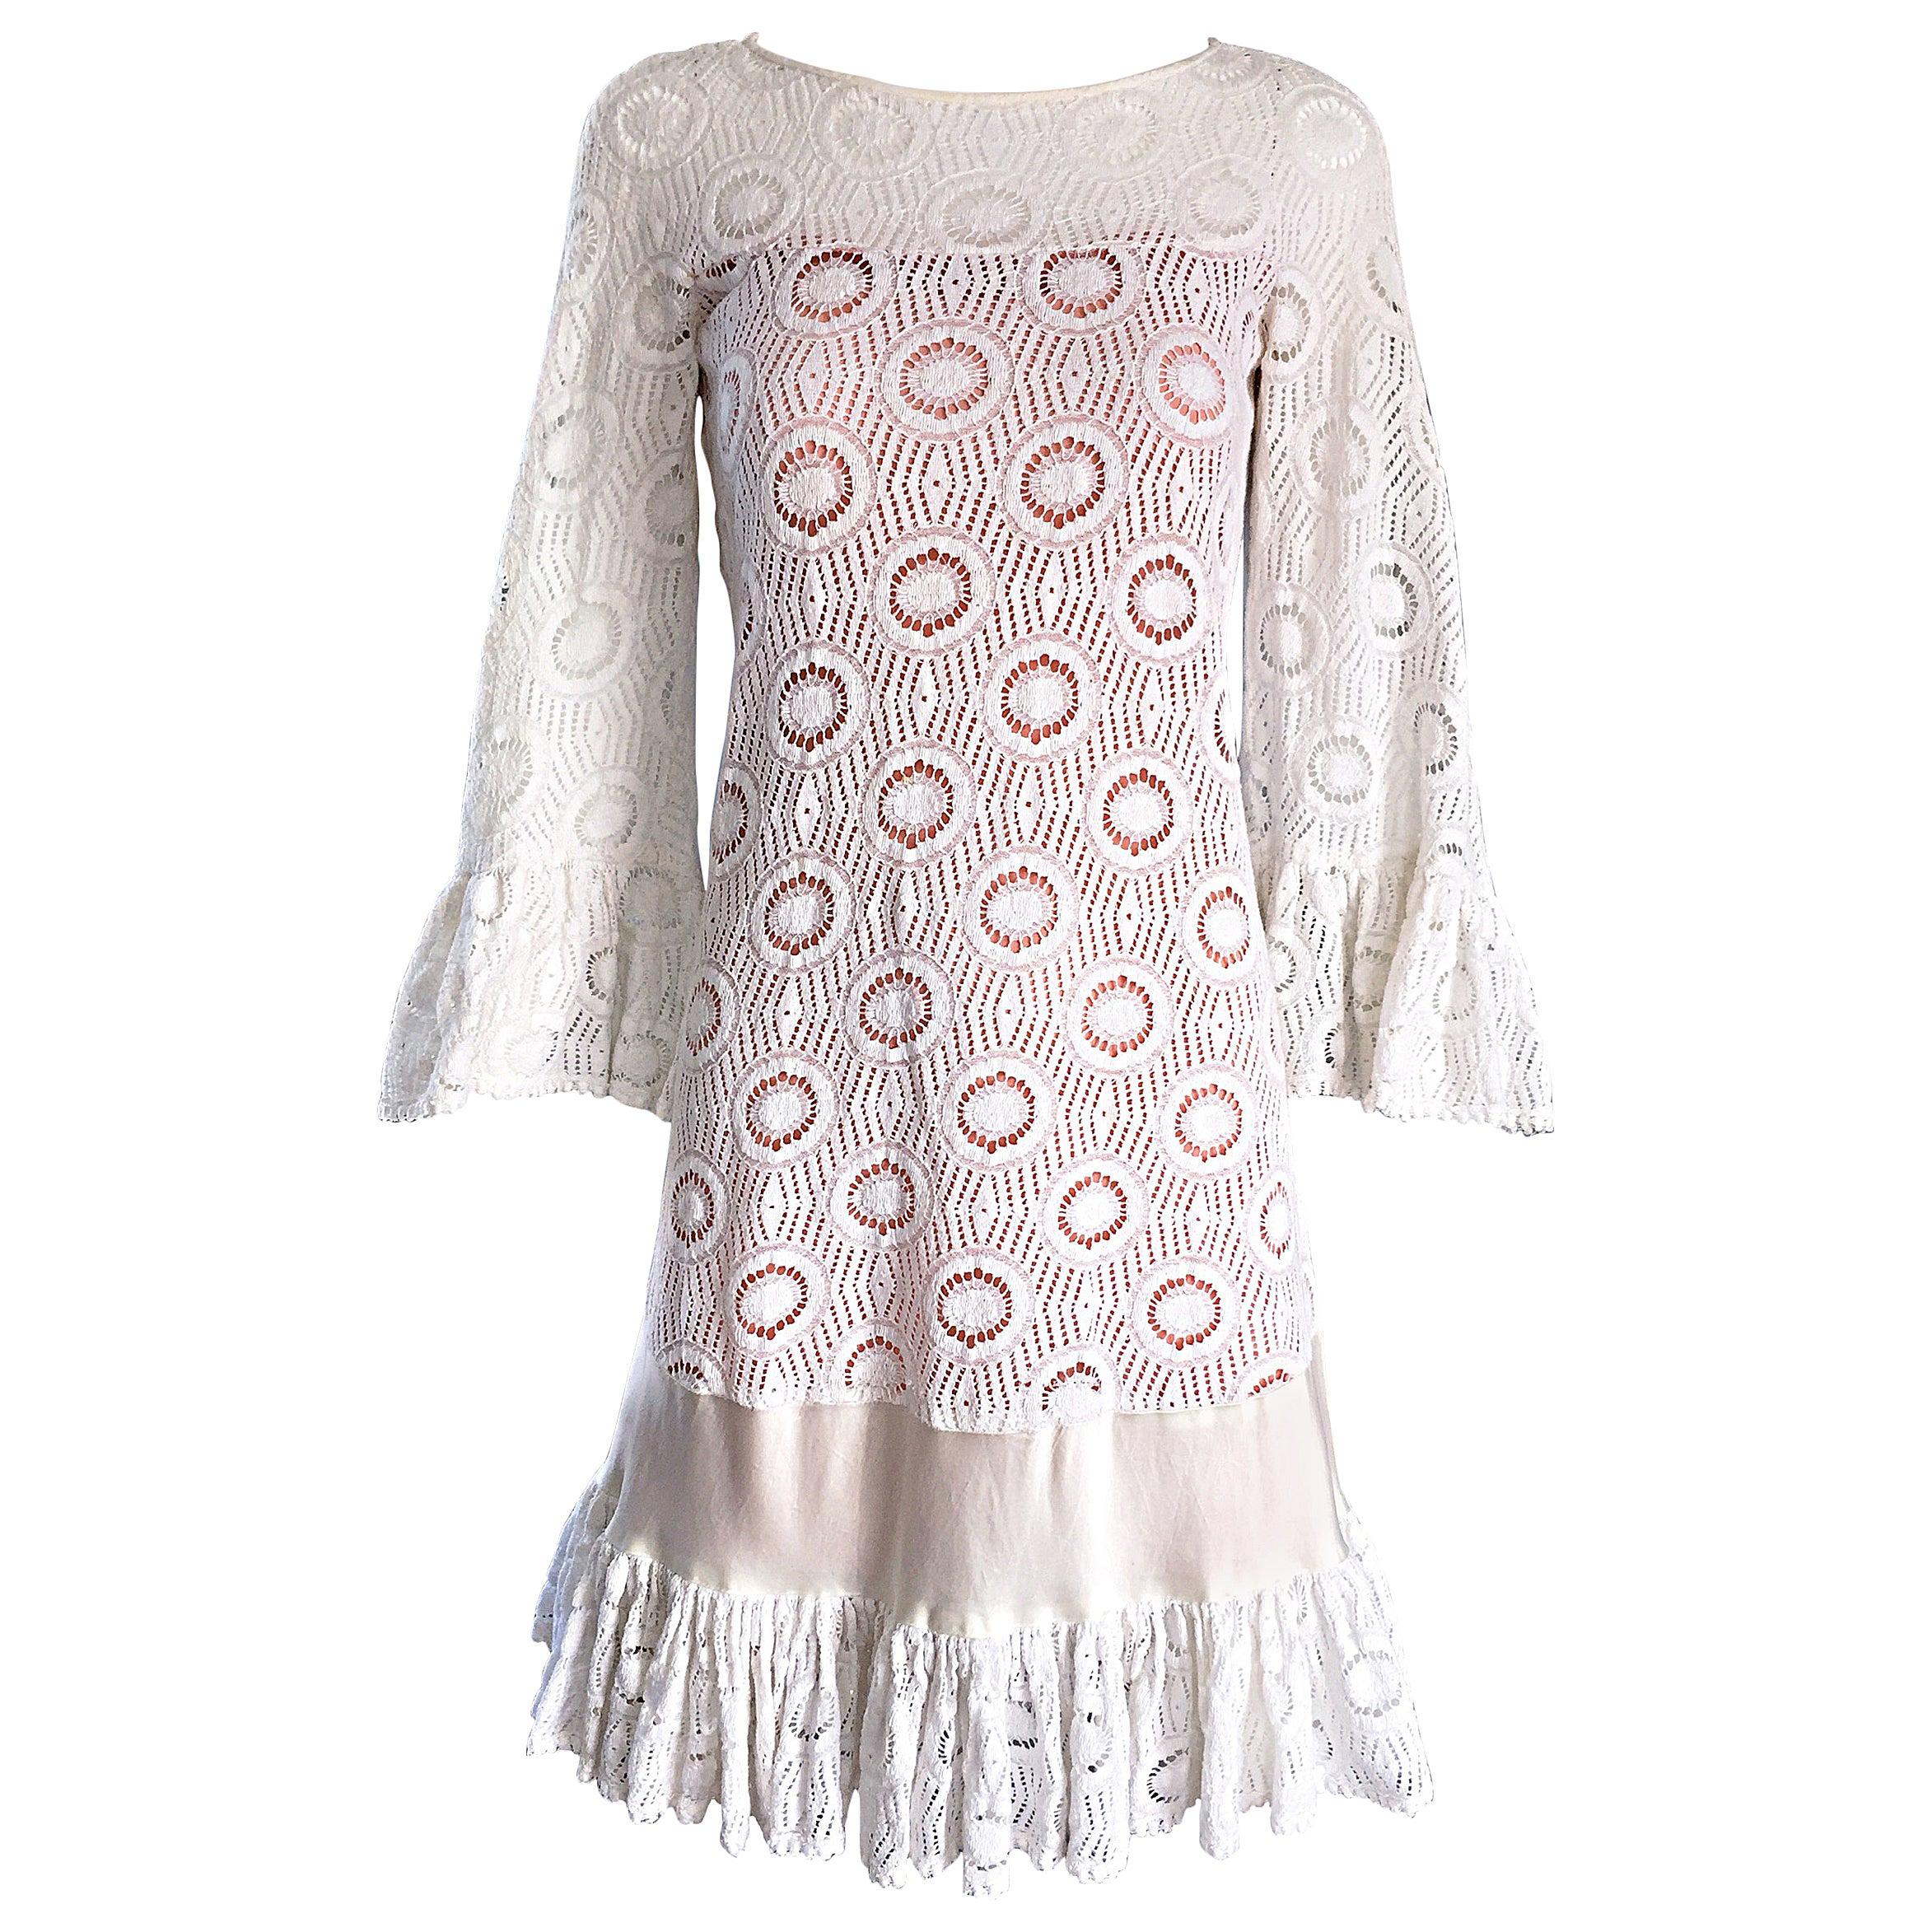 Jay Morley for Fern Violette 1960s Ivory Crochet Boho Bell Sleeve A Line Dress 